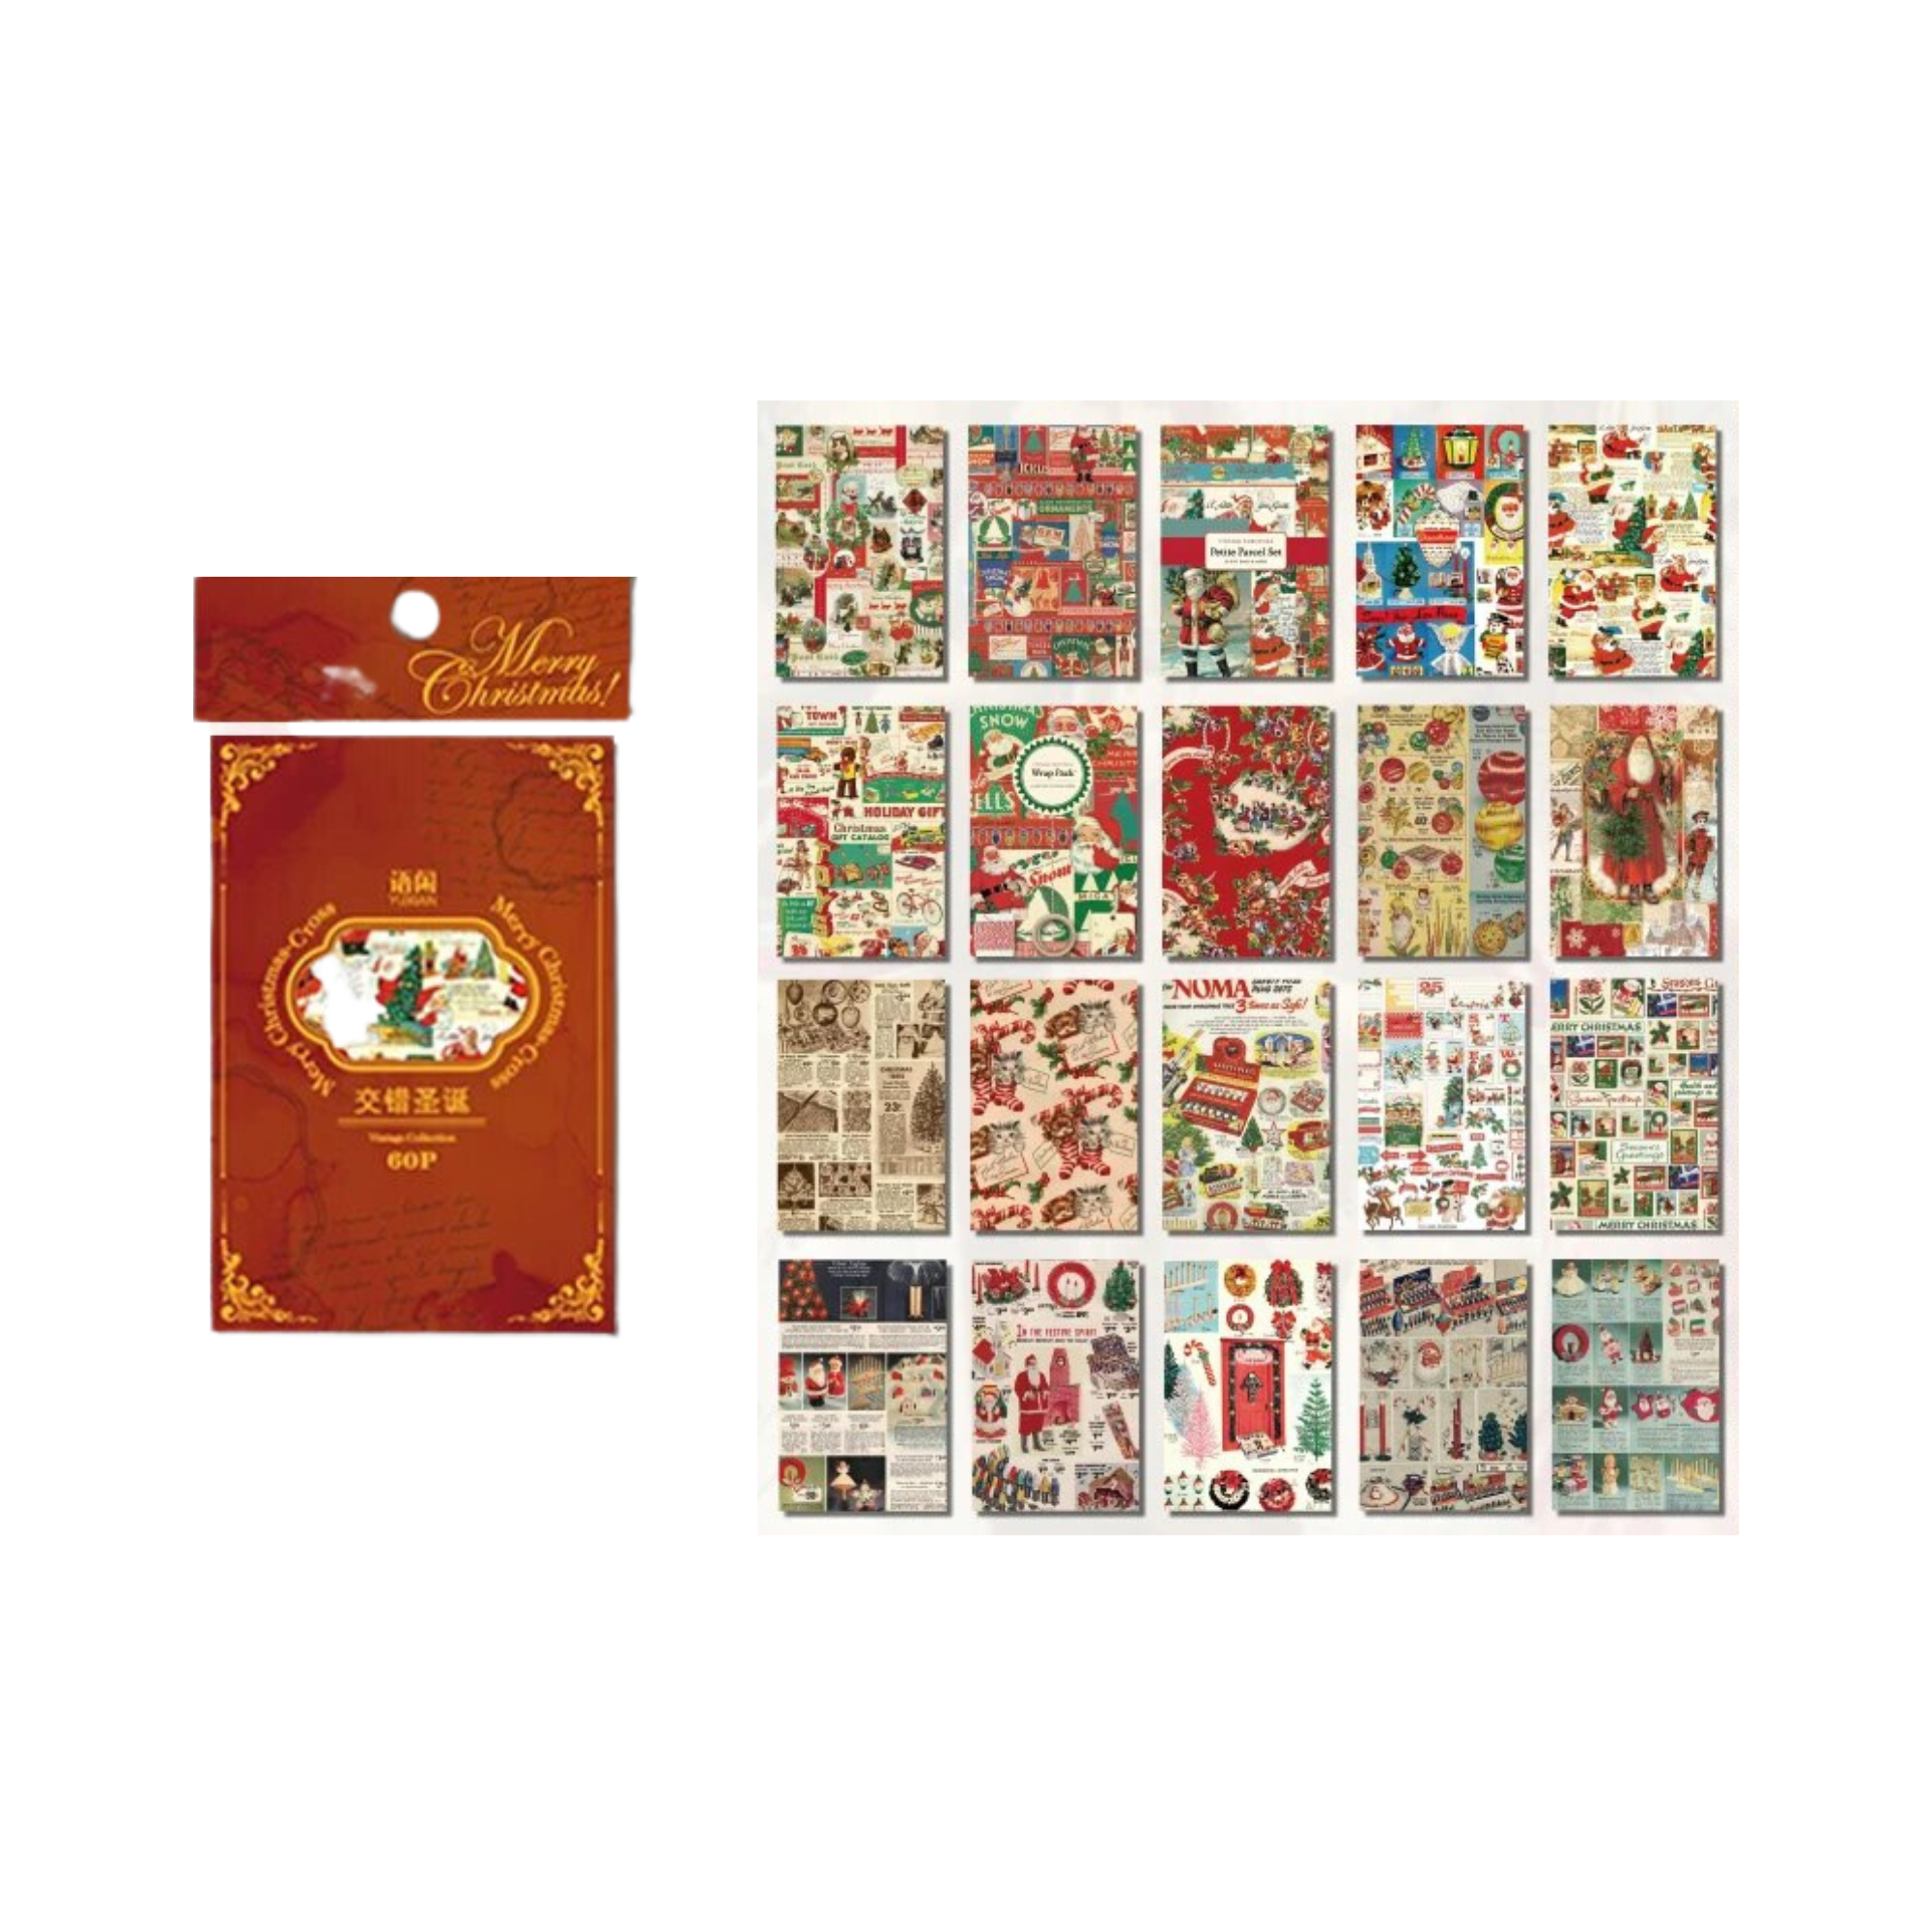 60 Stück Weihnachten Hintergrundmaterial Papier Junk Journal Planer Aufkleber Scrapbooking Vintage Dekorativ DIY Handwerk Fotoalbum